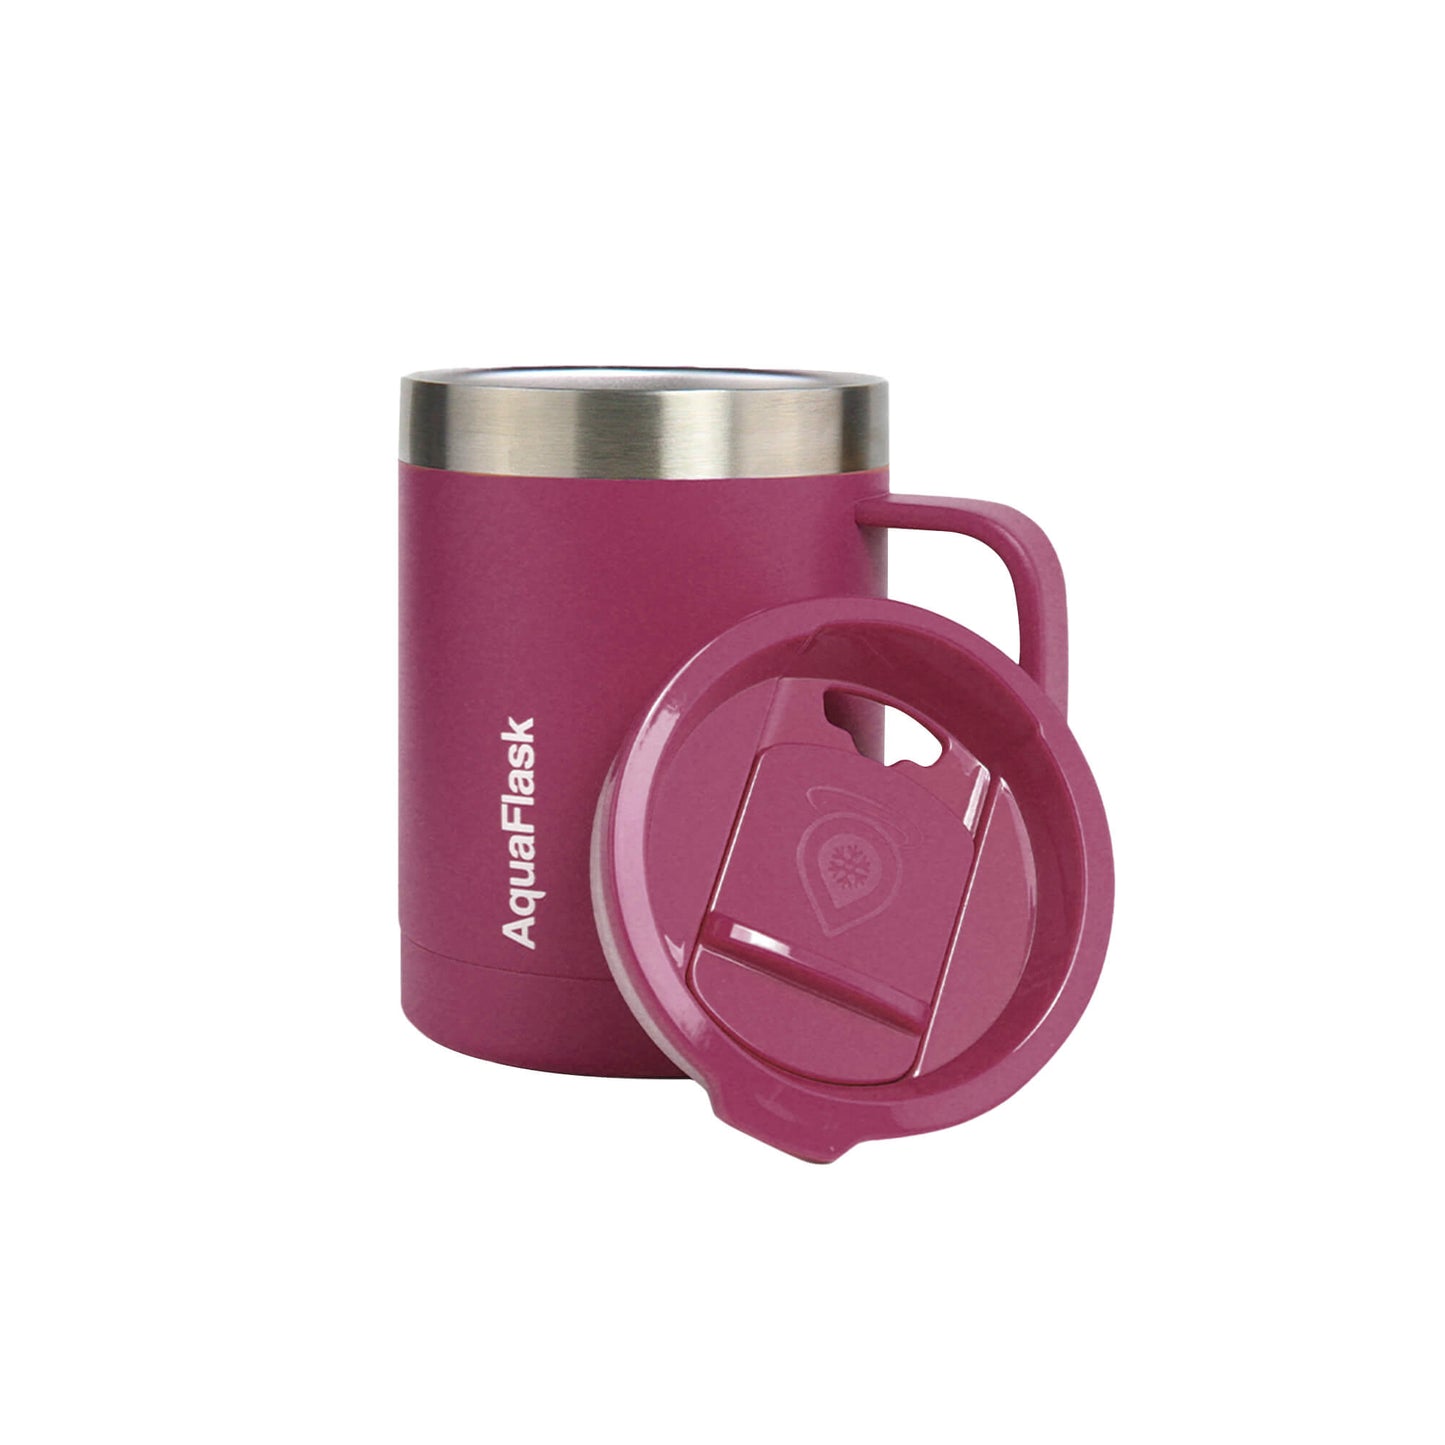 Aquaflask Thermal Insulated Lidded Mug With Handle 415ml (14oz)